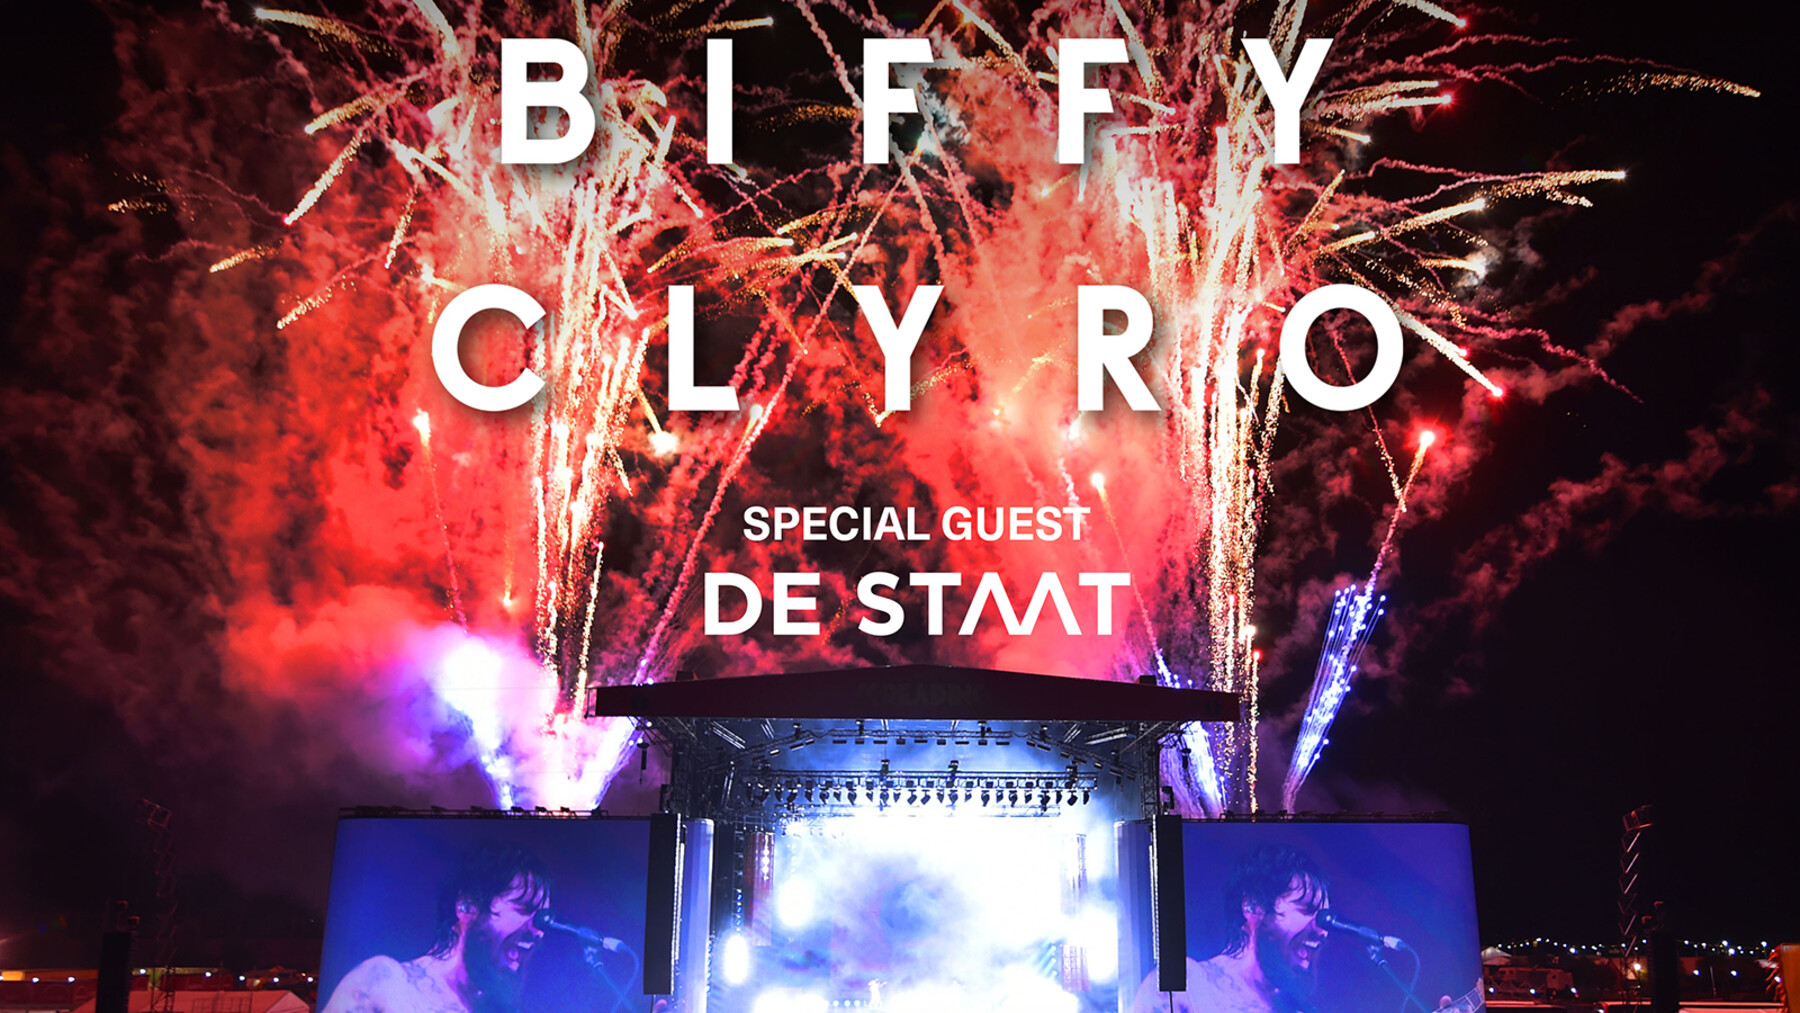 biffy clyro tour 2022 schweiz